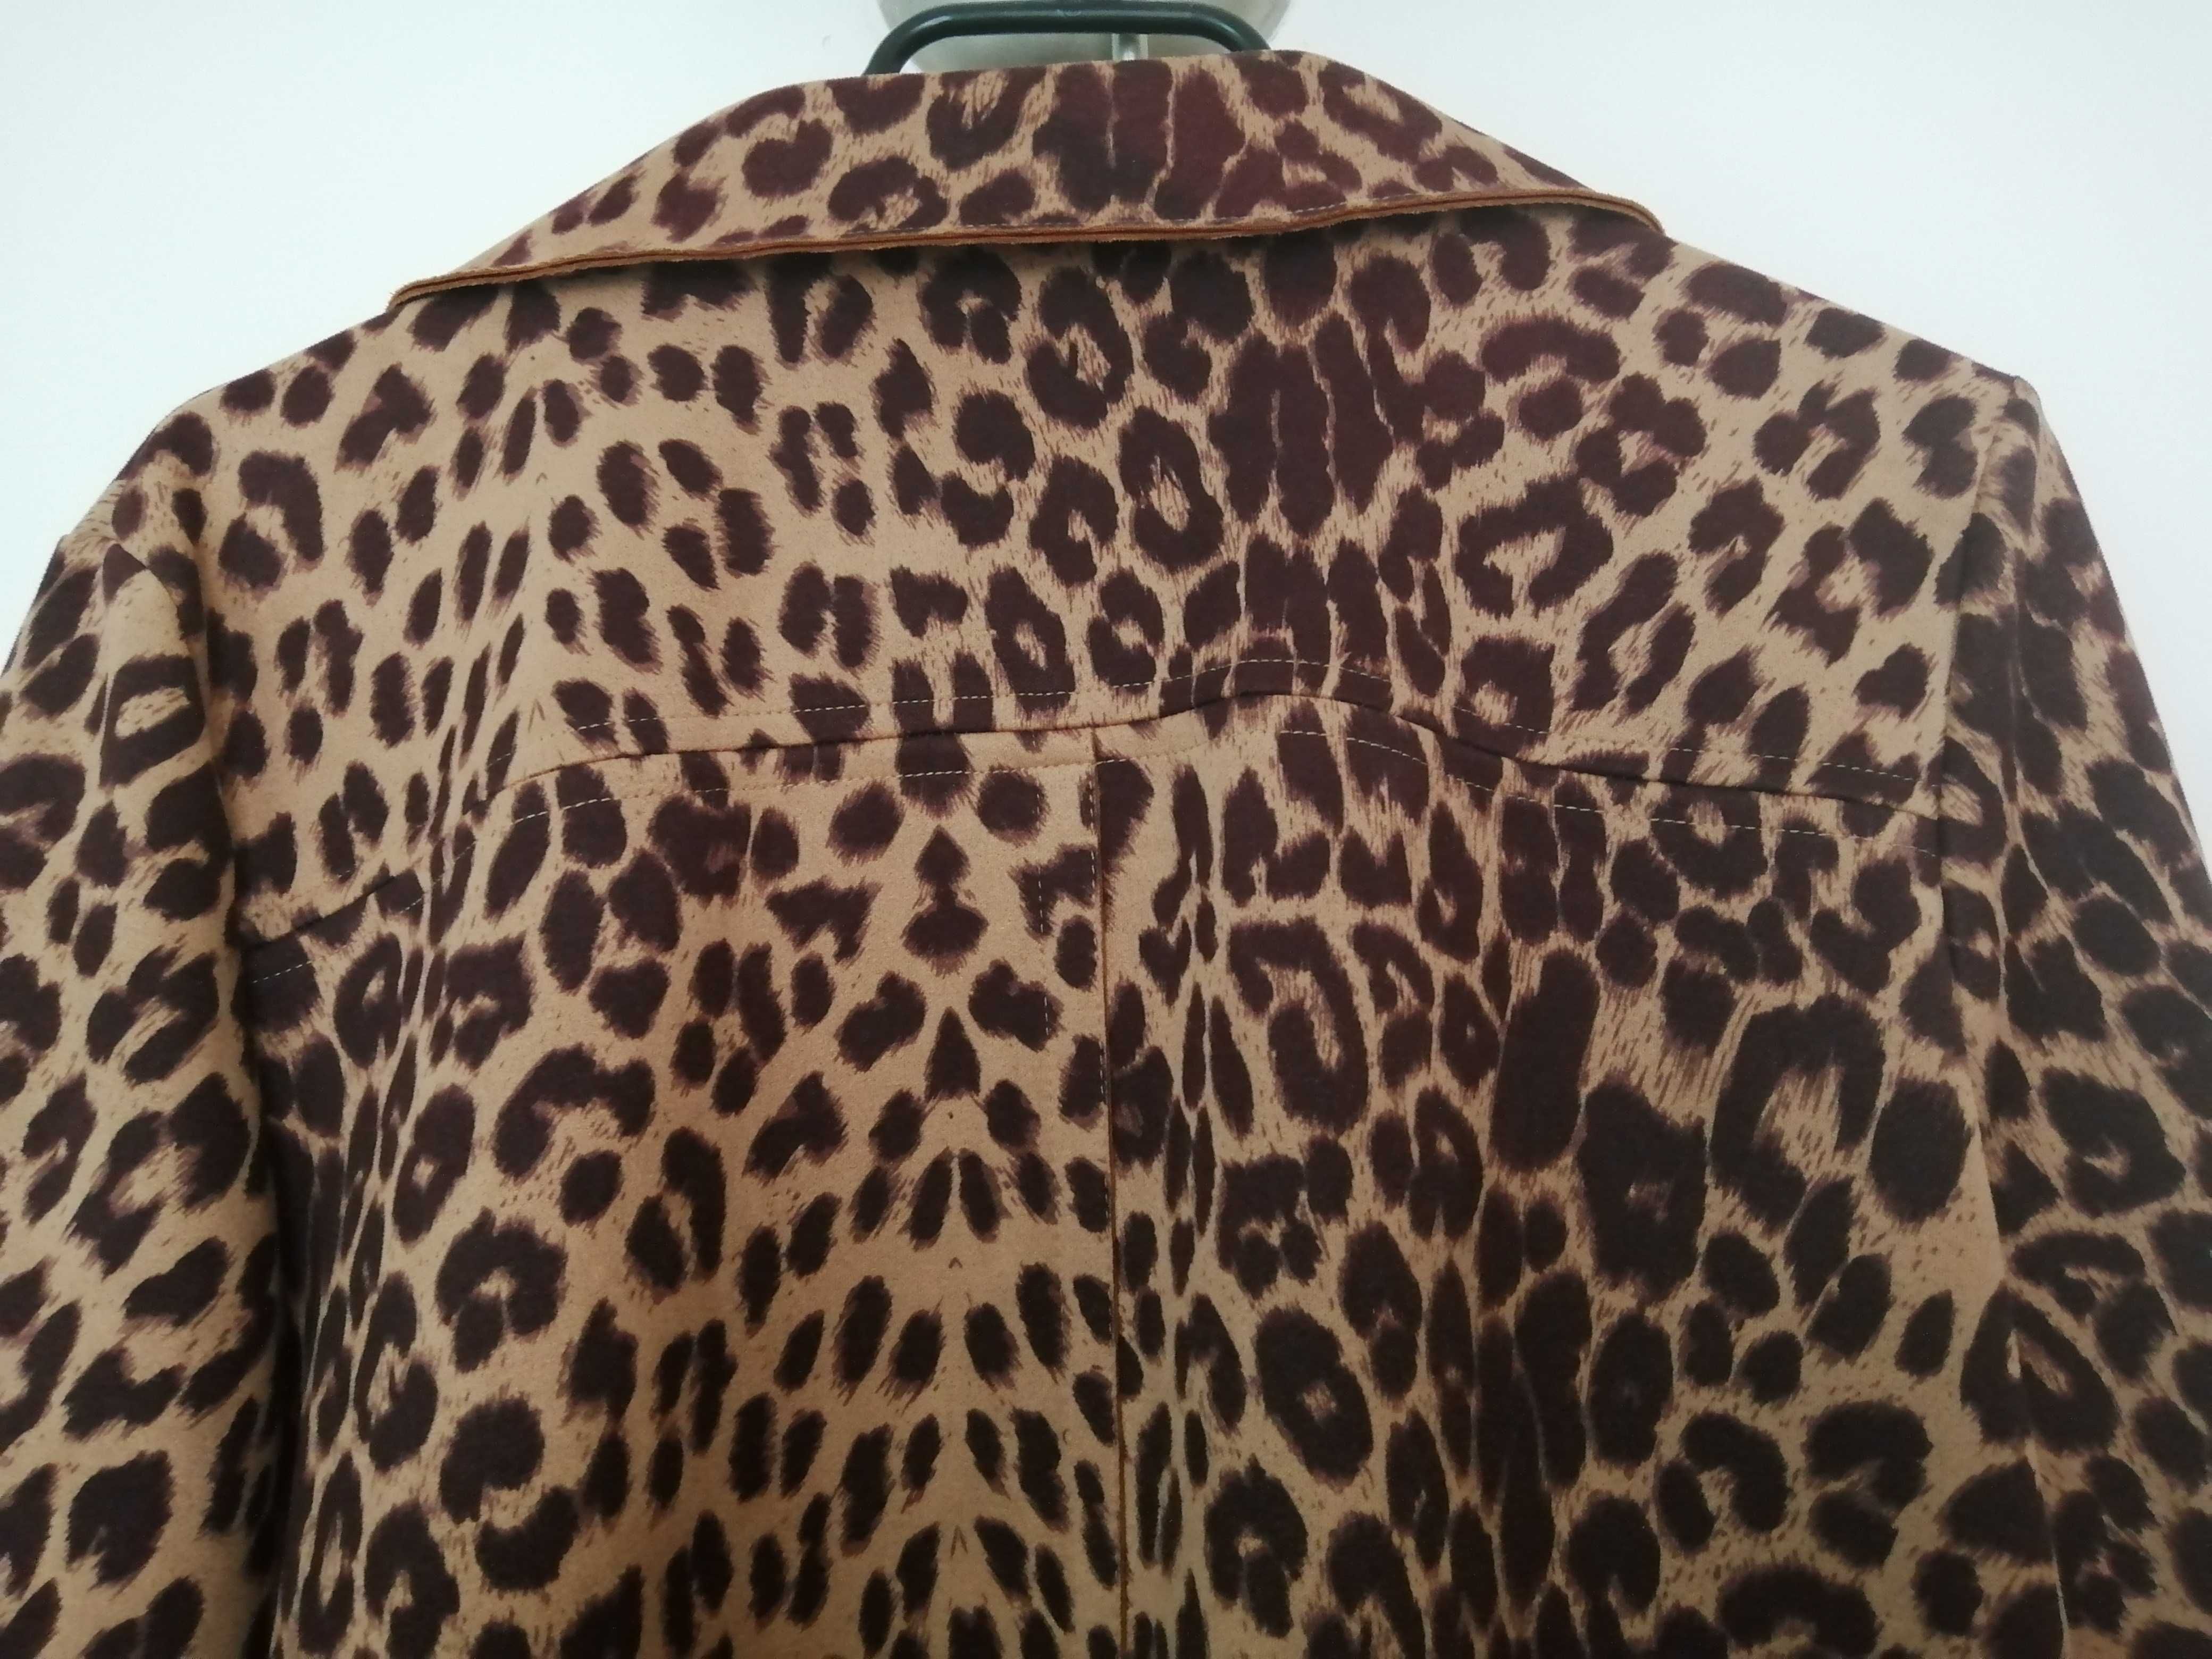 Wiosenny płaszcz Zara r. M/L/XL